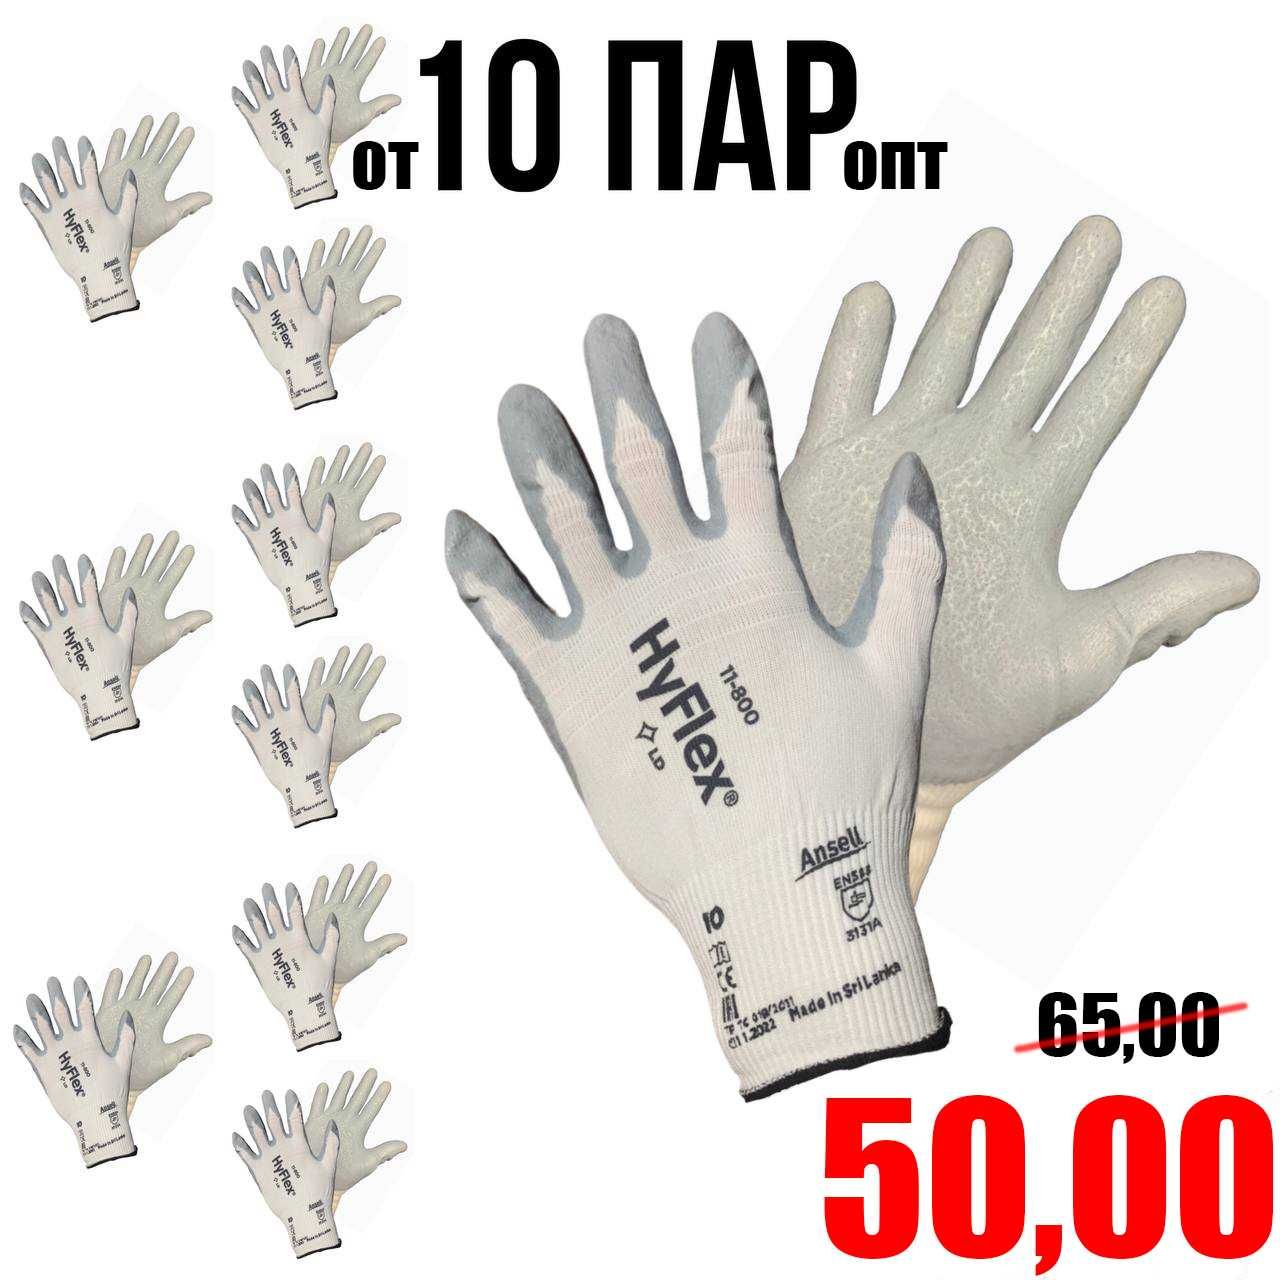 Робочі рукавички перчатки HyFlex 11-800, р 10 (ХL). ОПТ. Пено-нитрил